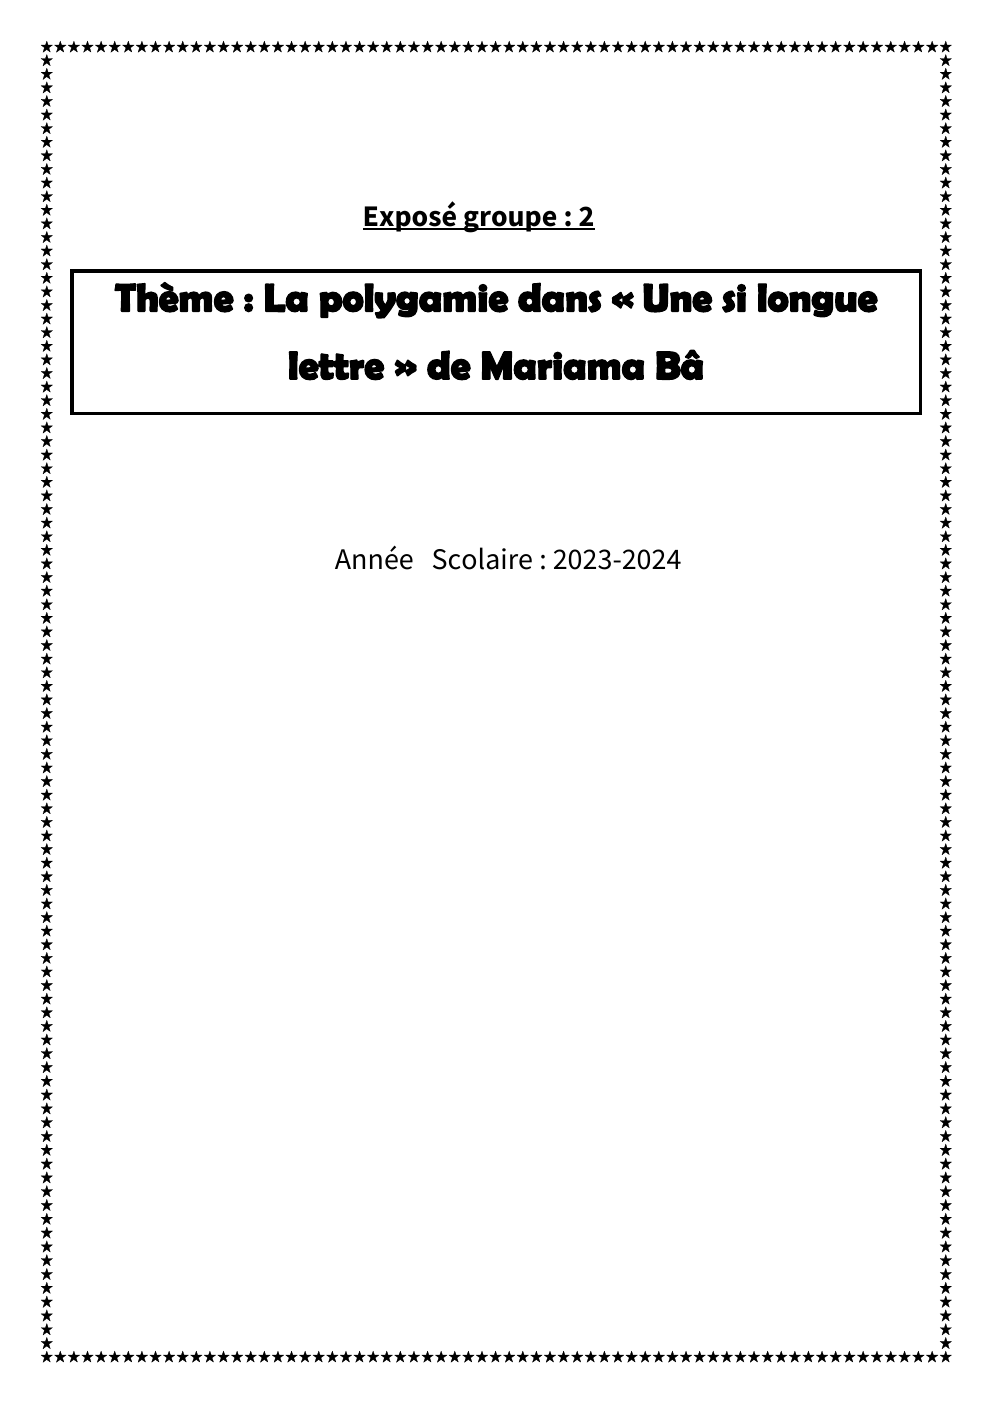 Prévisualisation du document La polygamie dans une si longue lettre (exposé)